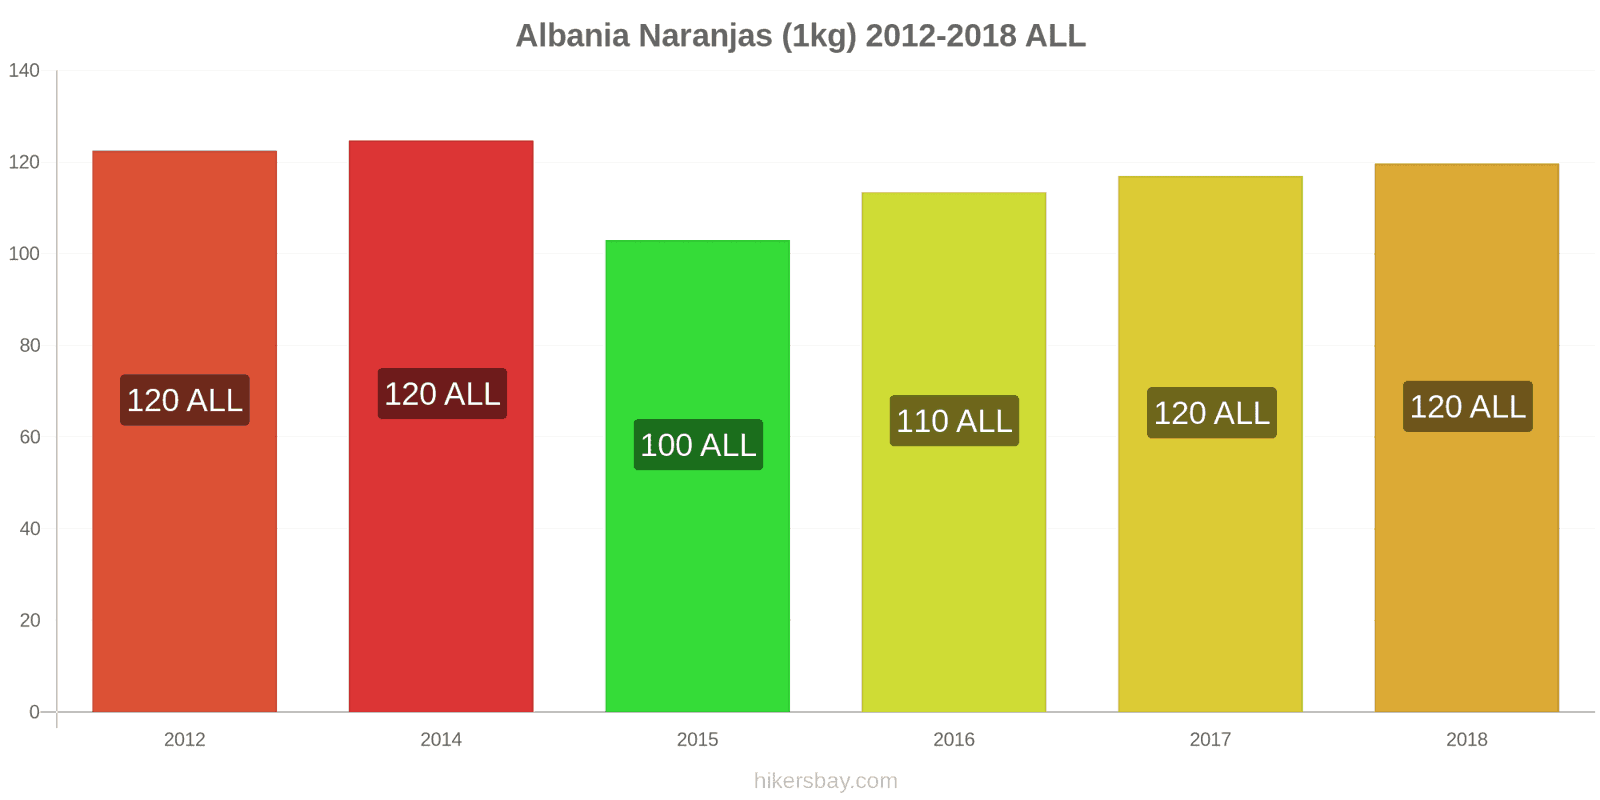 Albania cambios de precios Naranjas (1kg) hikersbay.com